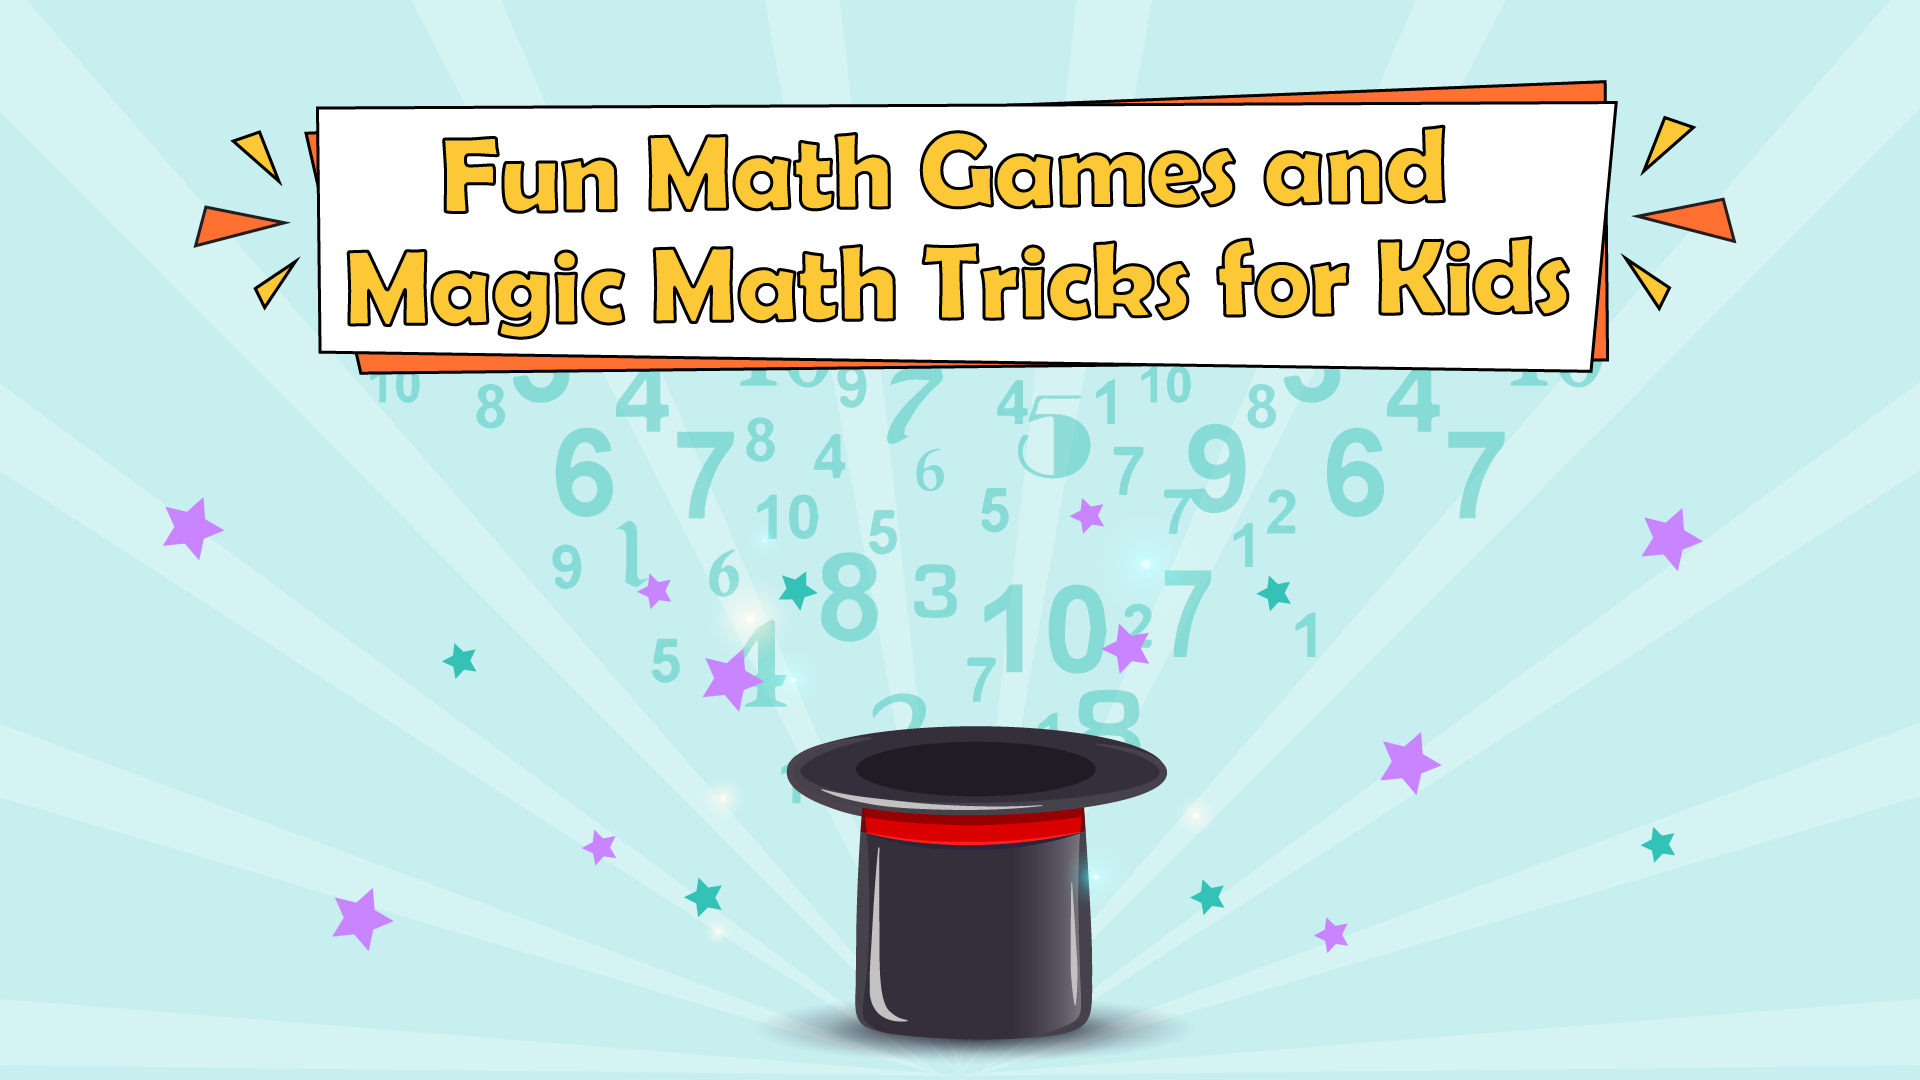 Fun Math Games and Magic Math Tricks for Kids